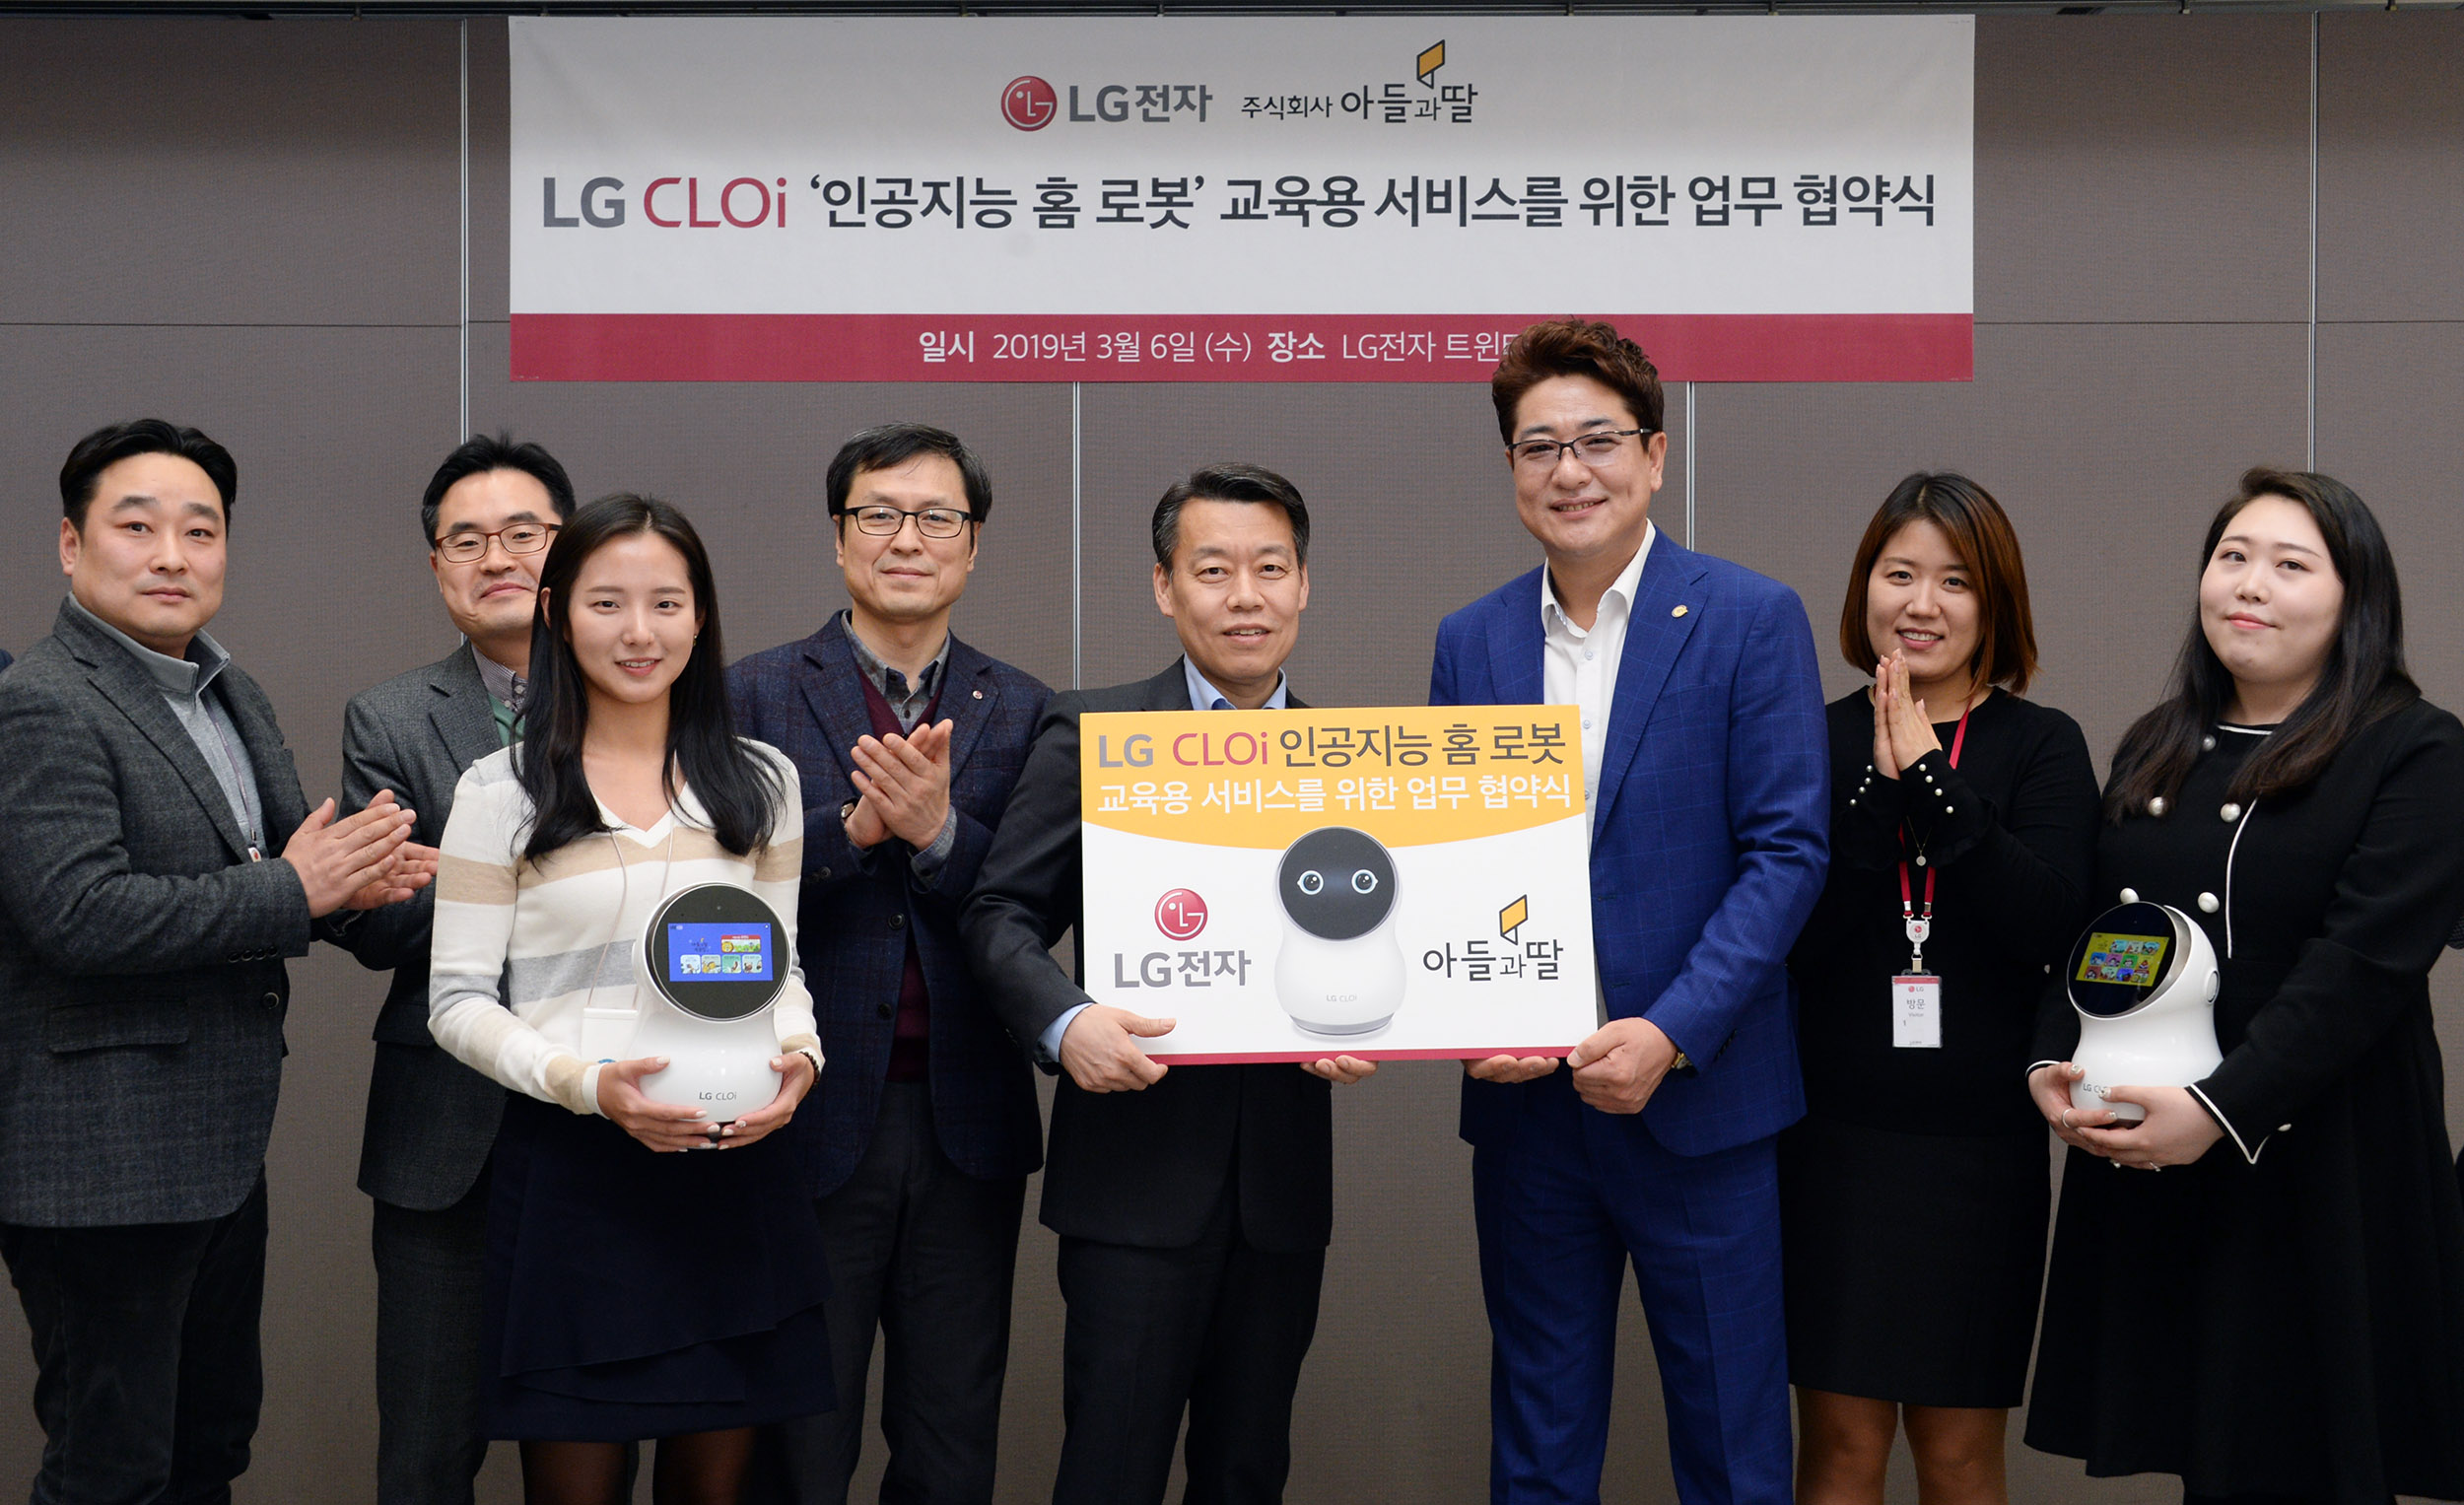 LG전자와 아들과딸社는 6일 서울 여의도에 위치한 LG트윈타워에서 LG전자 노진서 로봇사업센터장(왼쪽에서 다섯번째), 아들과딸社 조진석 대표(왼쪽에서 여섯번째) 등 양사 관계자들이 참석한 가운데 ‘LG 클로이 인공지능 홈 로봇 교육용 서비스를 위한 업무 협약’을 맺었다. 양사는 LG전자가 개발하는 인공지능 로봇 ‘LG 클로이’에 아들과딸社의 아동용 도서앱 '아들과딸북클럽'을 탑재해 차별화된 교육용 콘텐츠를 제공할 계획이다. 